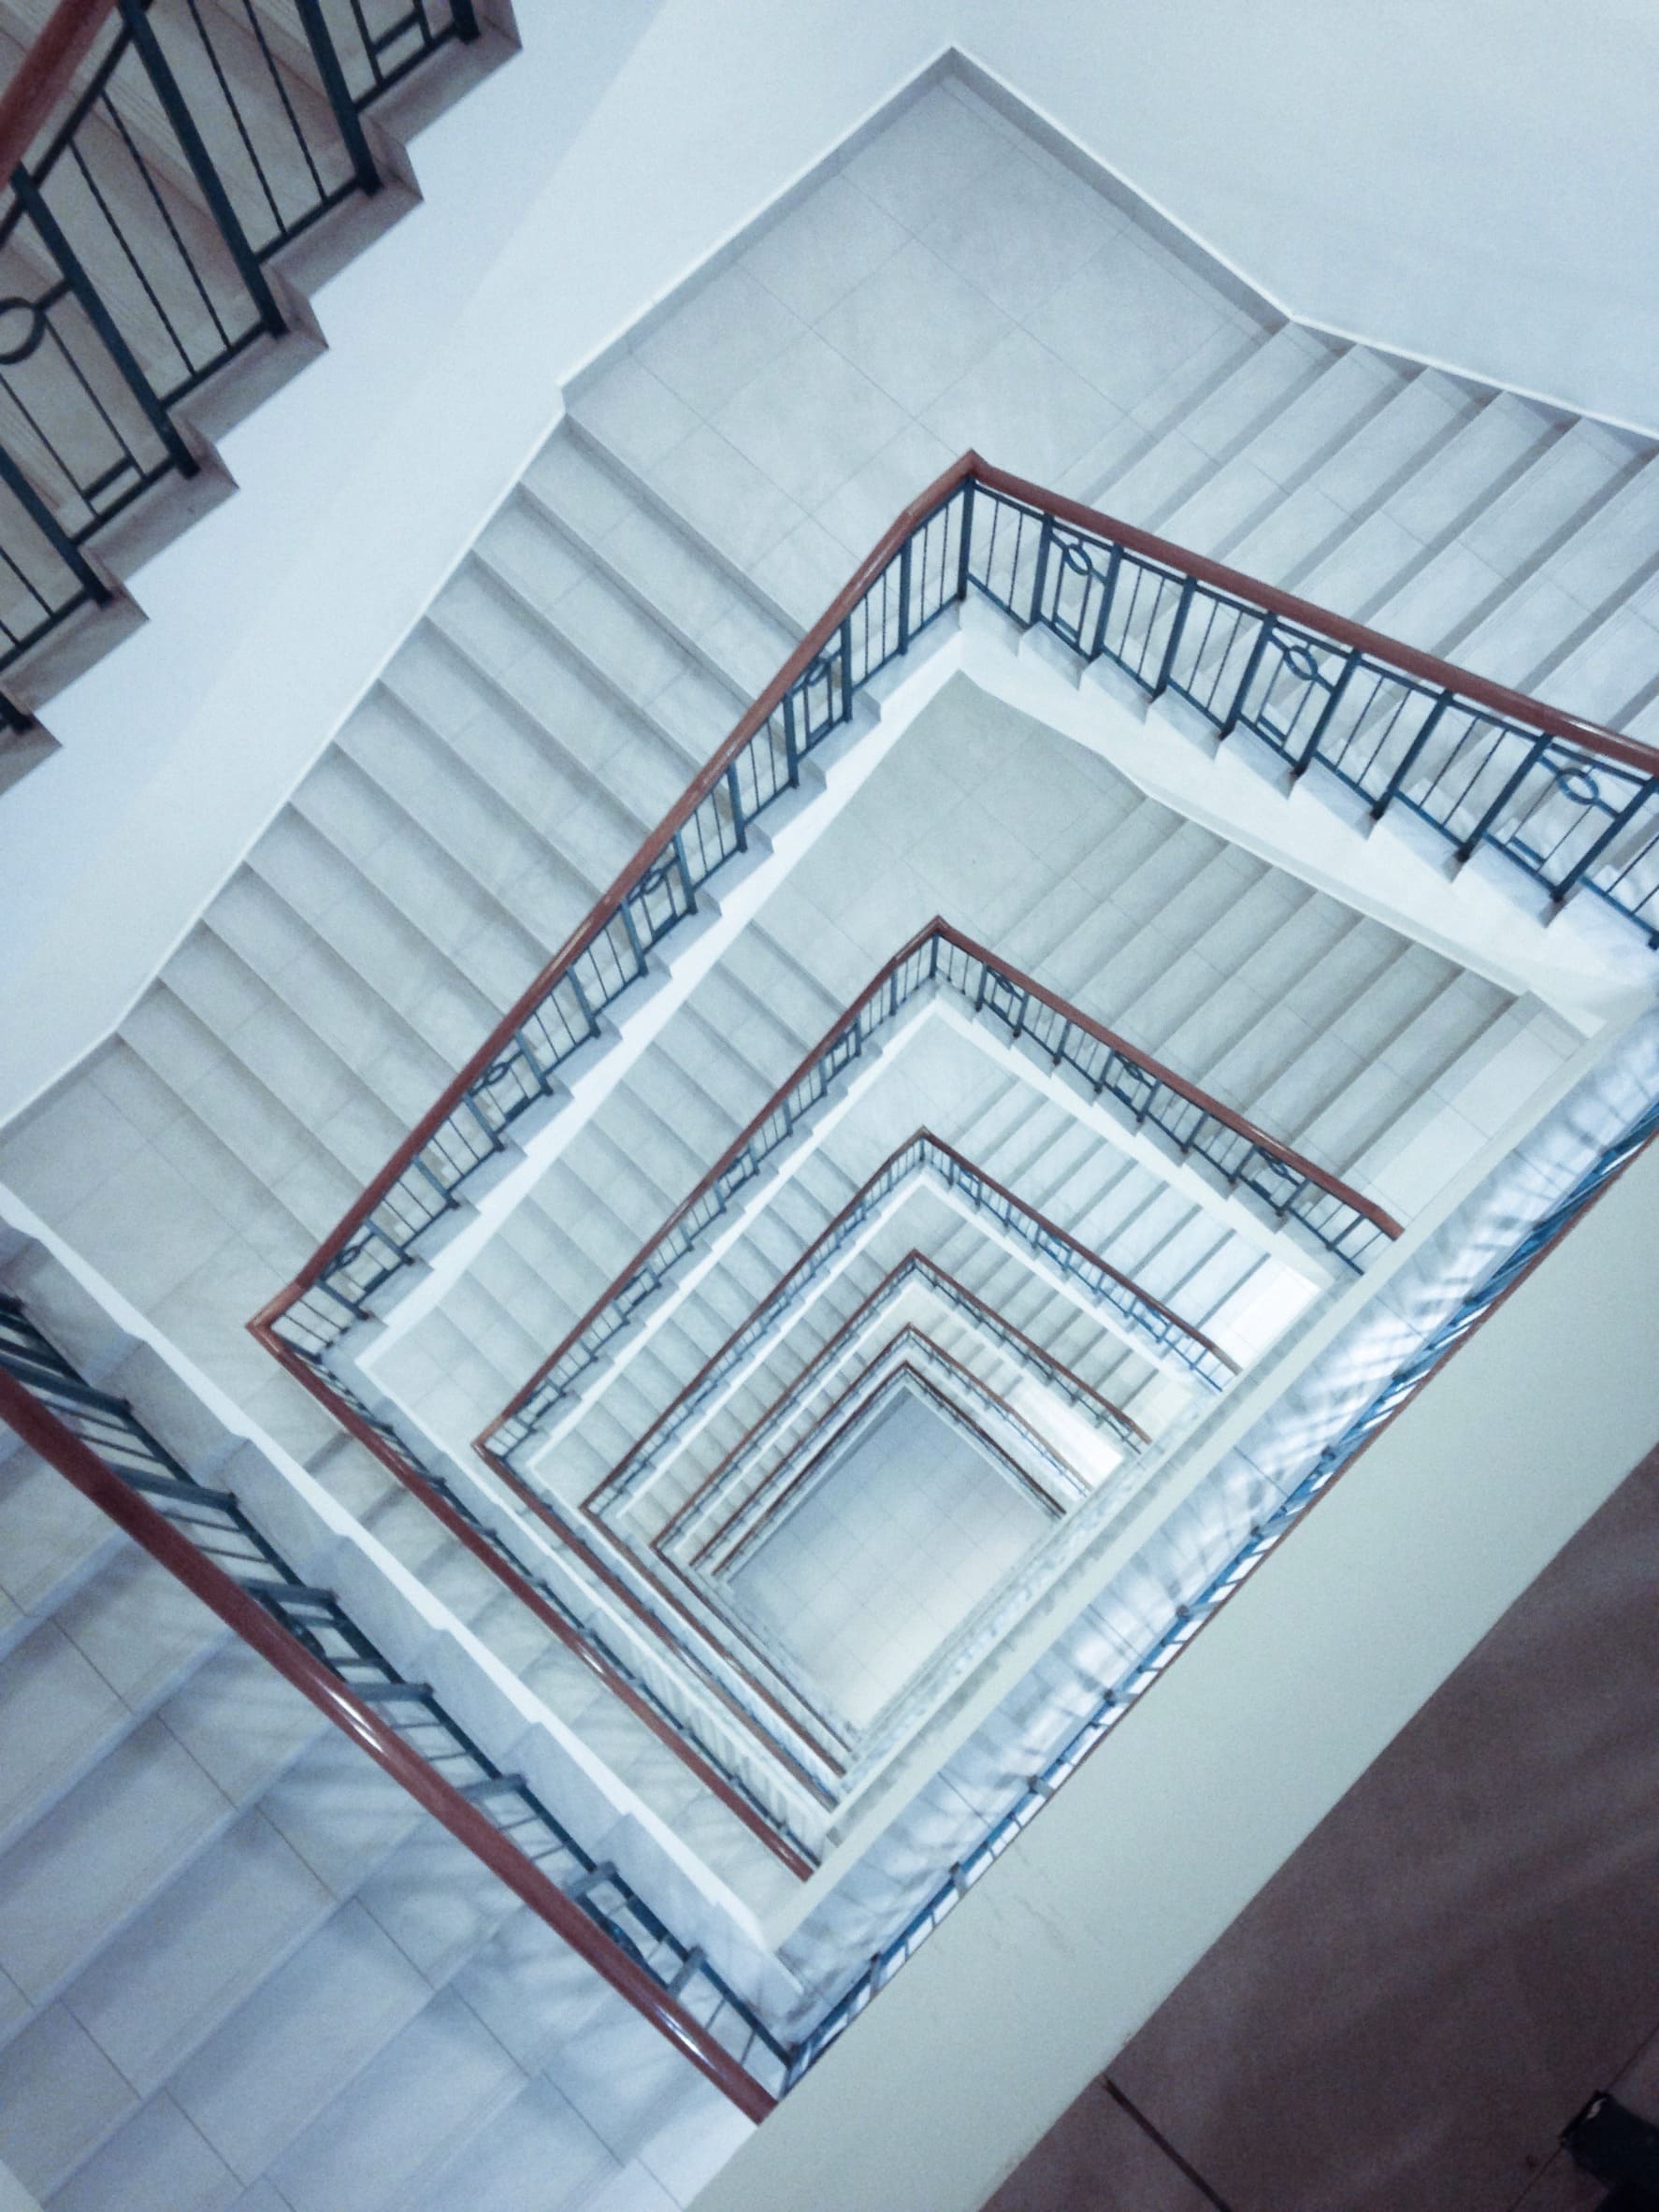 Largas escaleras de un bloque de pisos